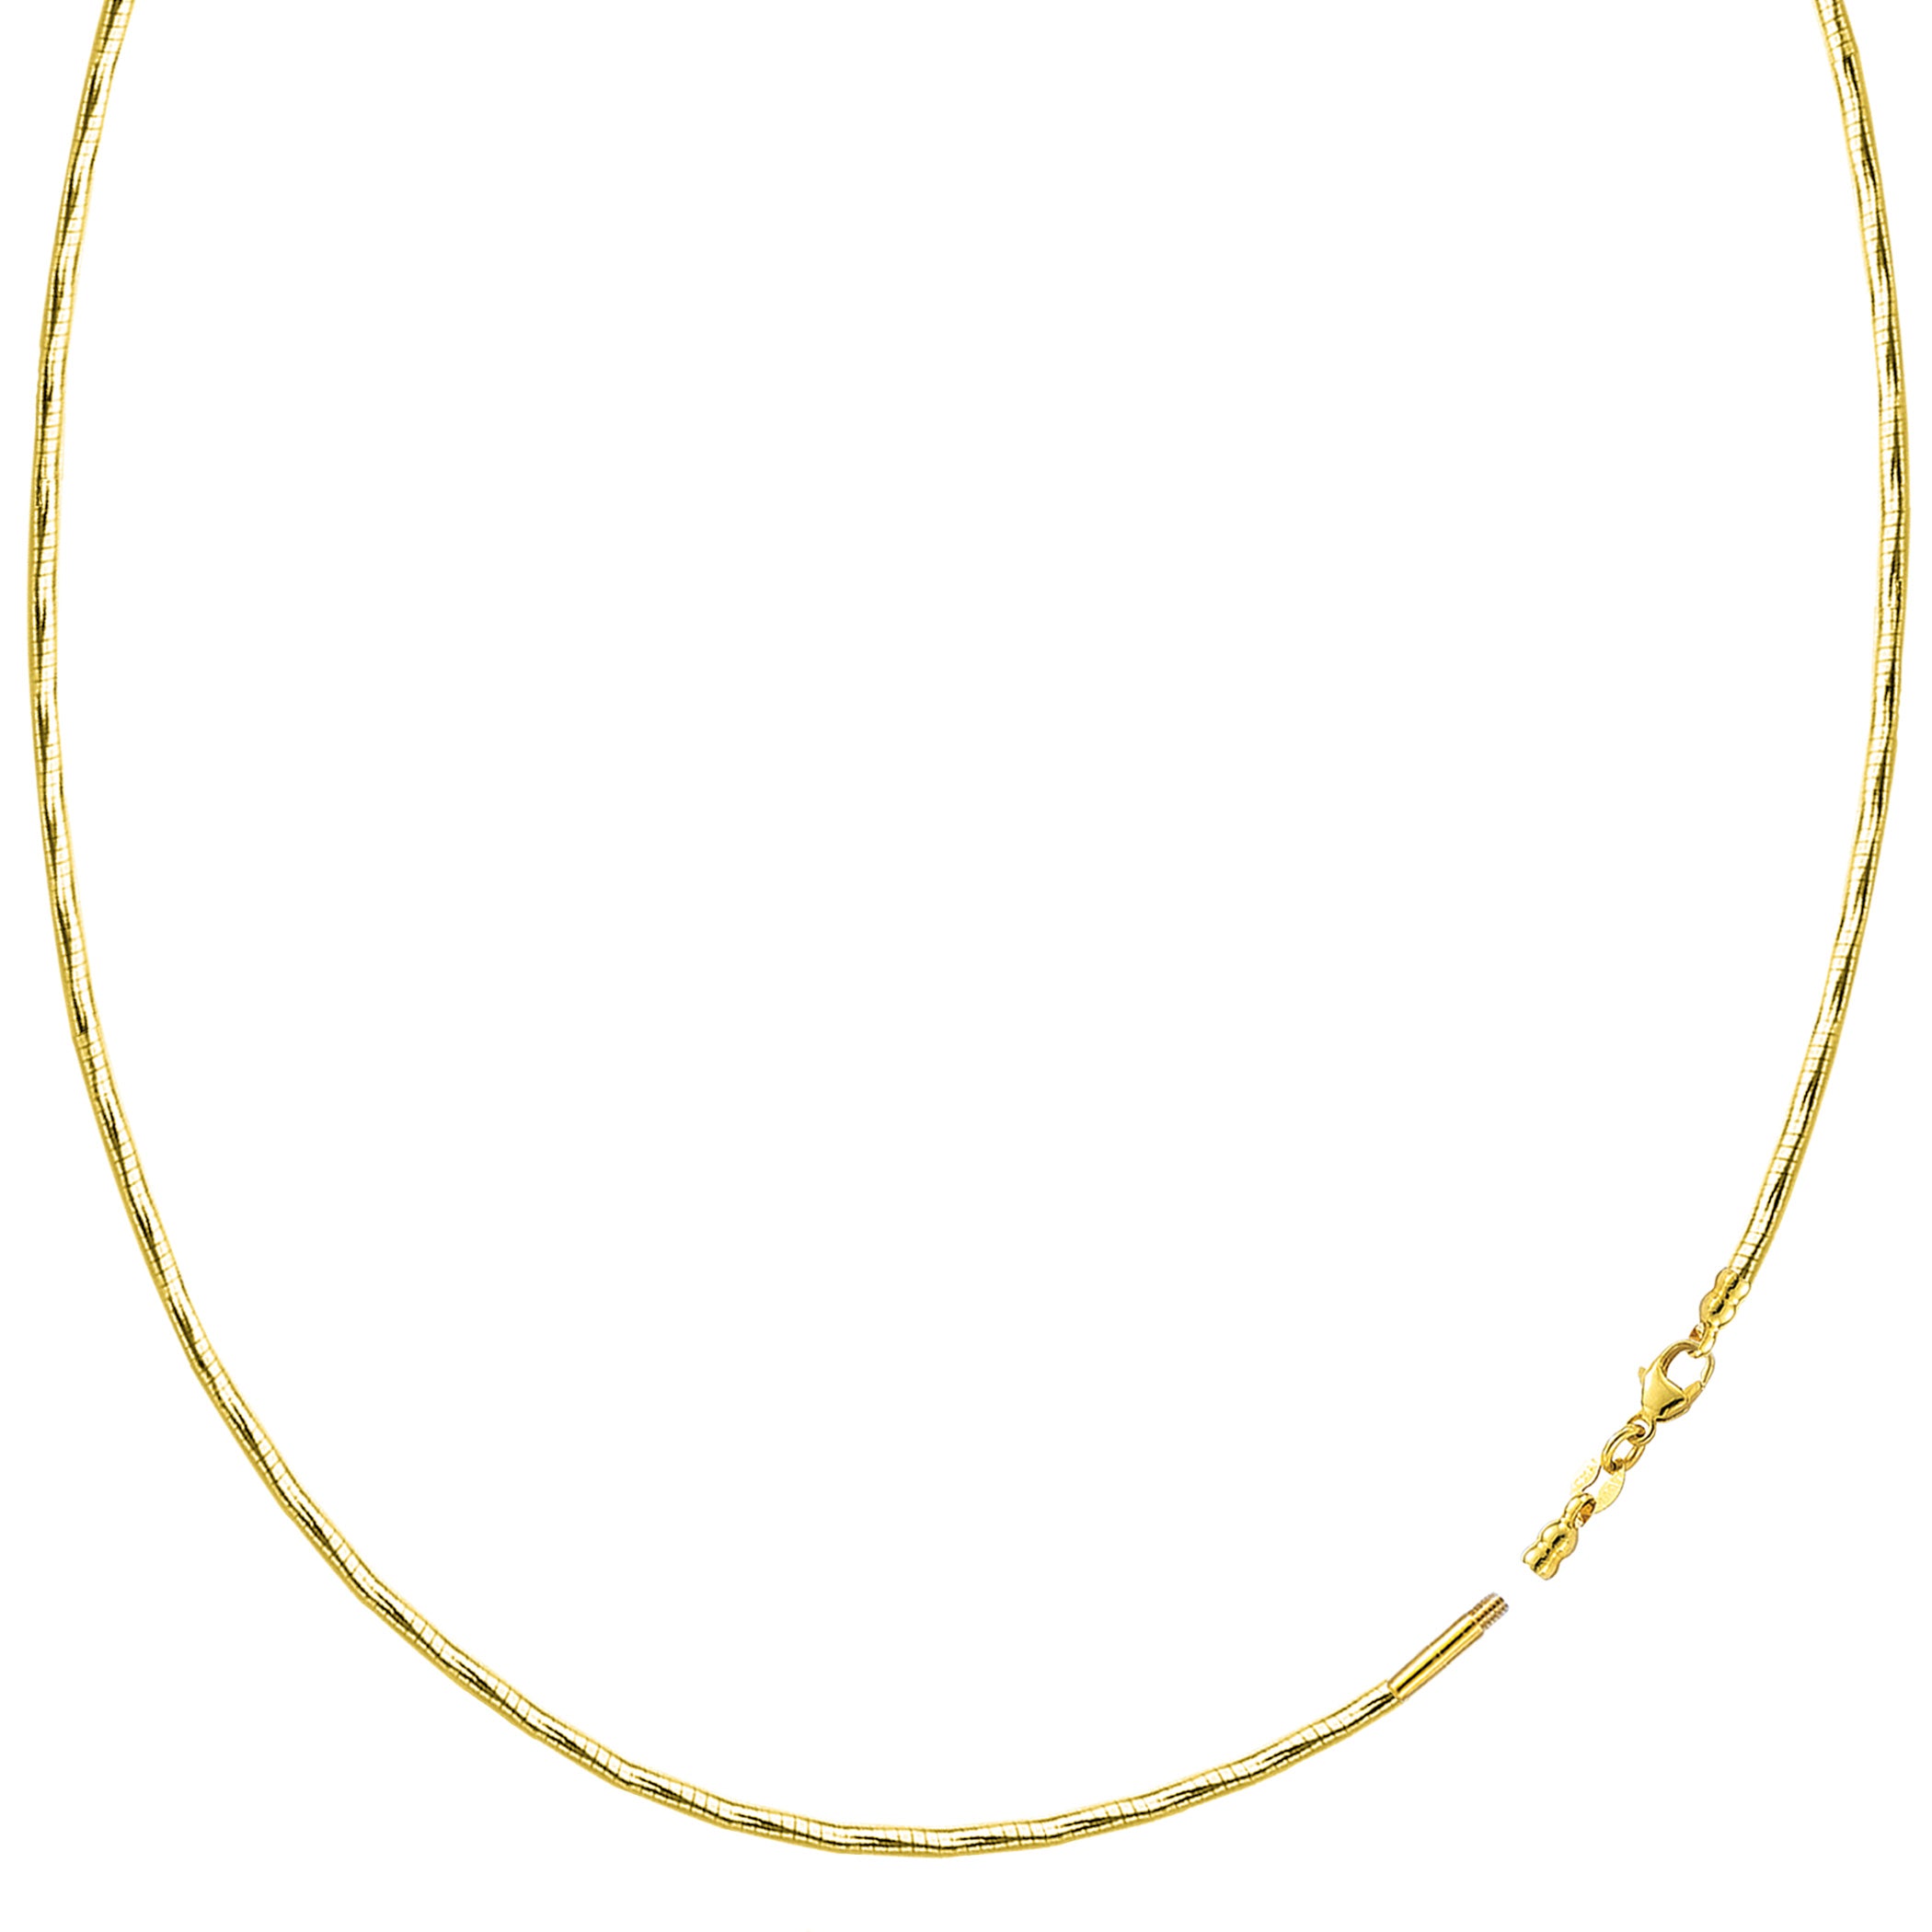 Diamantslipat Omega-kedjehalsband med skruvlås i 14k gult guld fina designersmycken för män och kvinnor